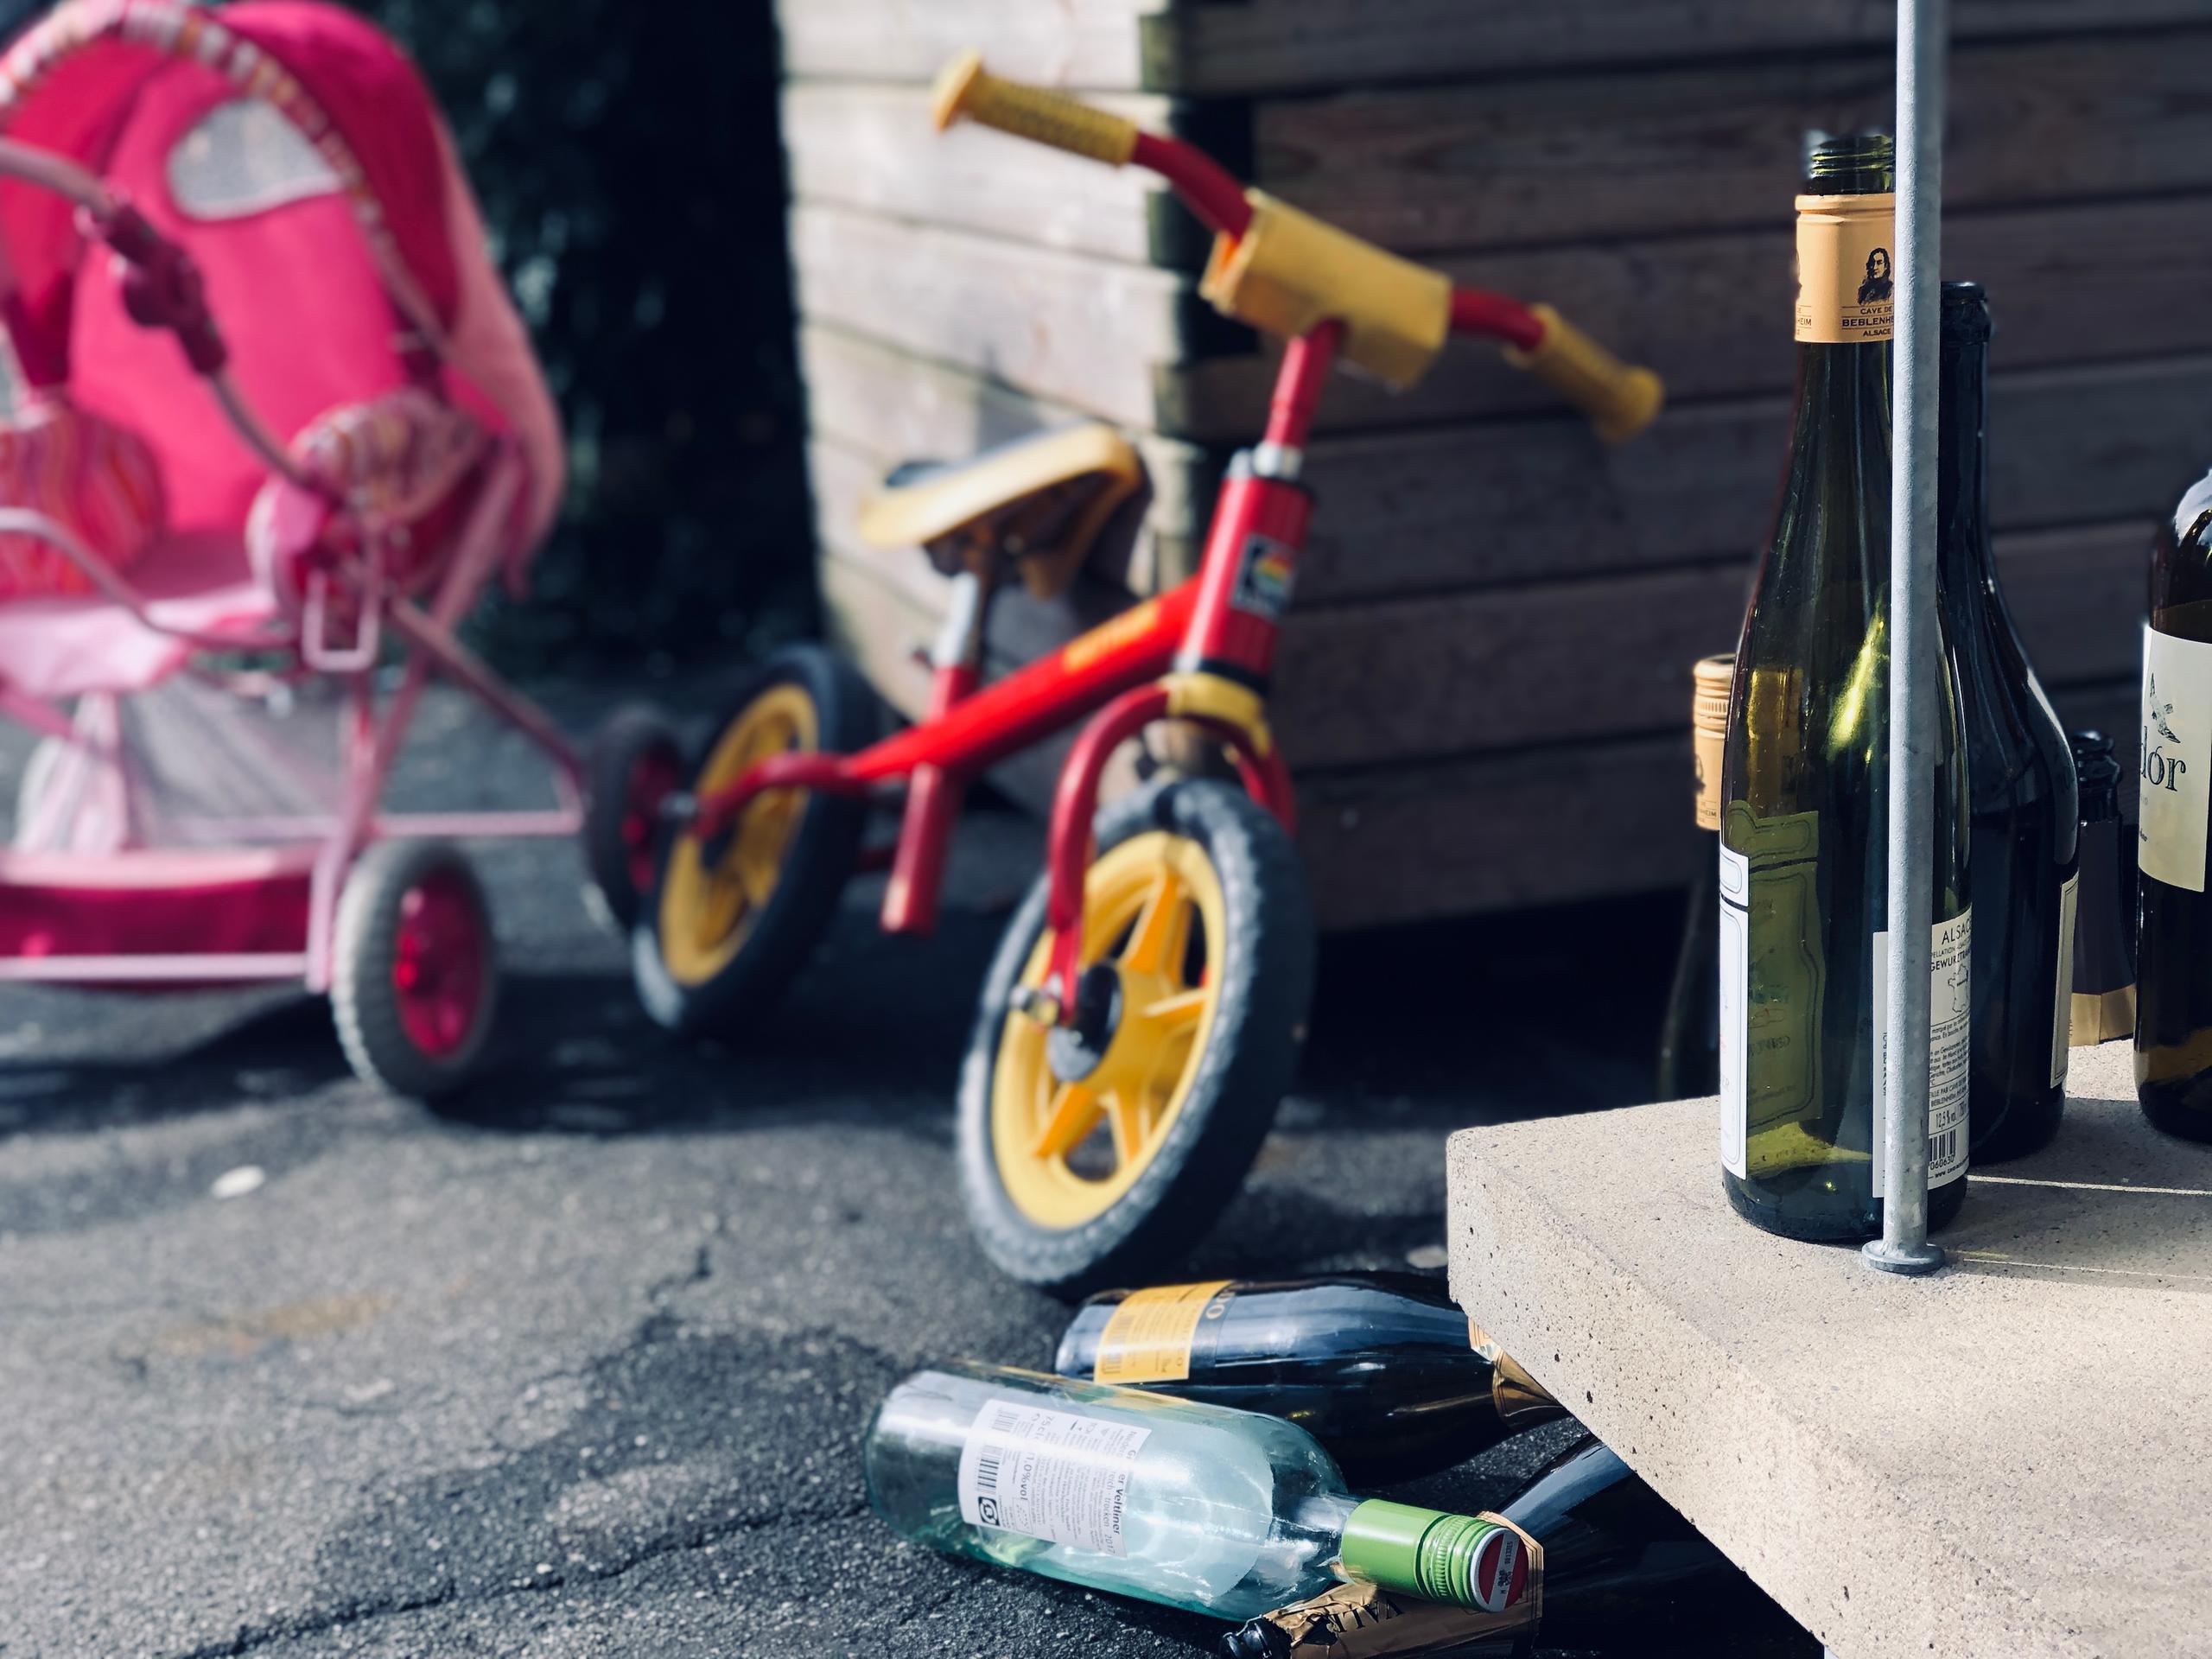 Bici infantil junto a unas botellas